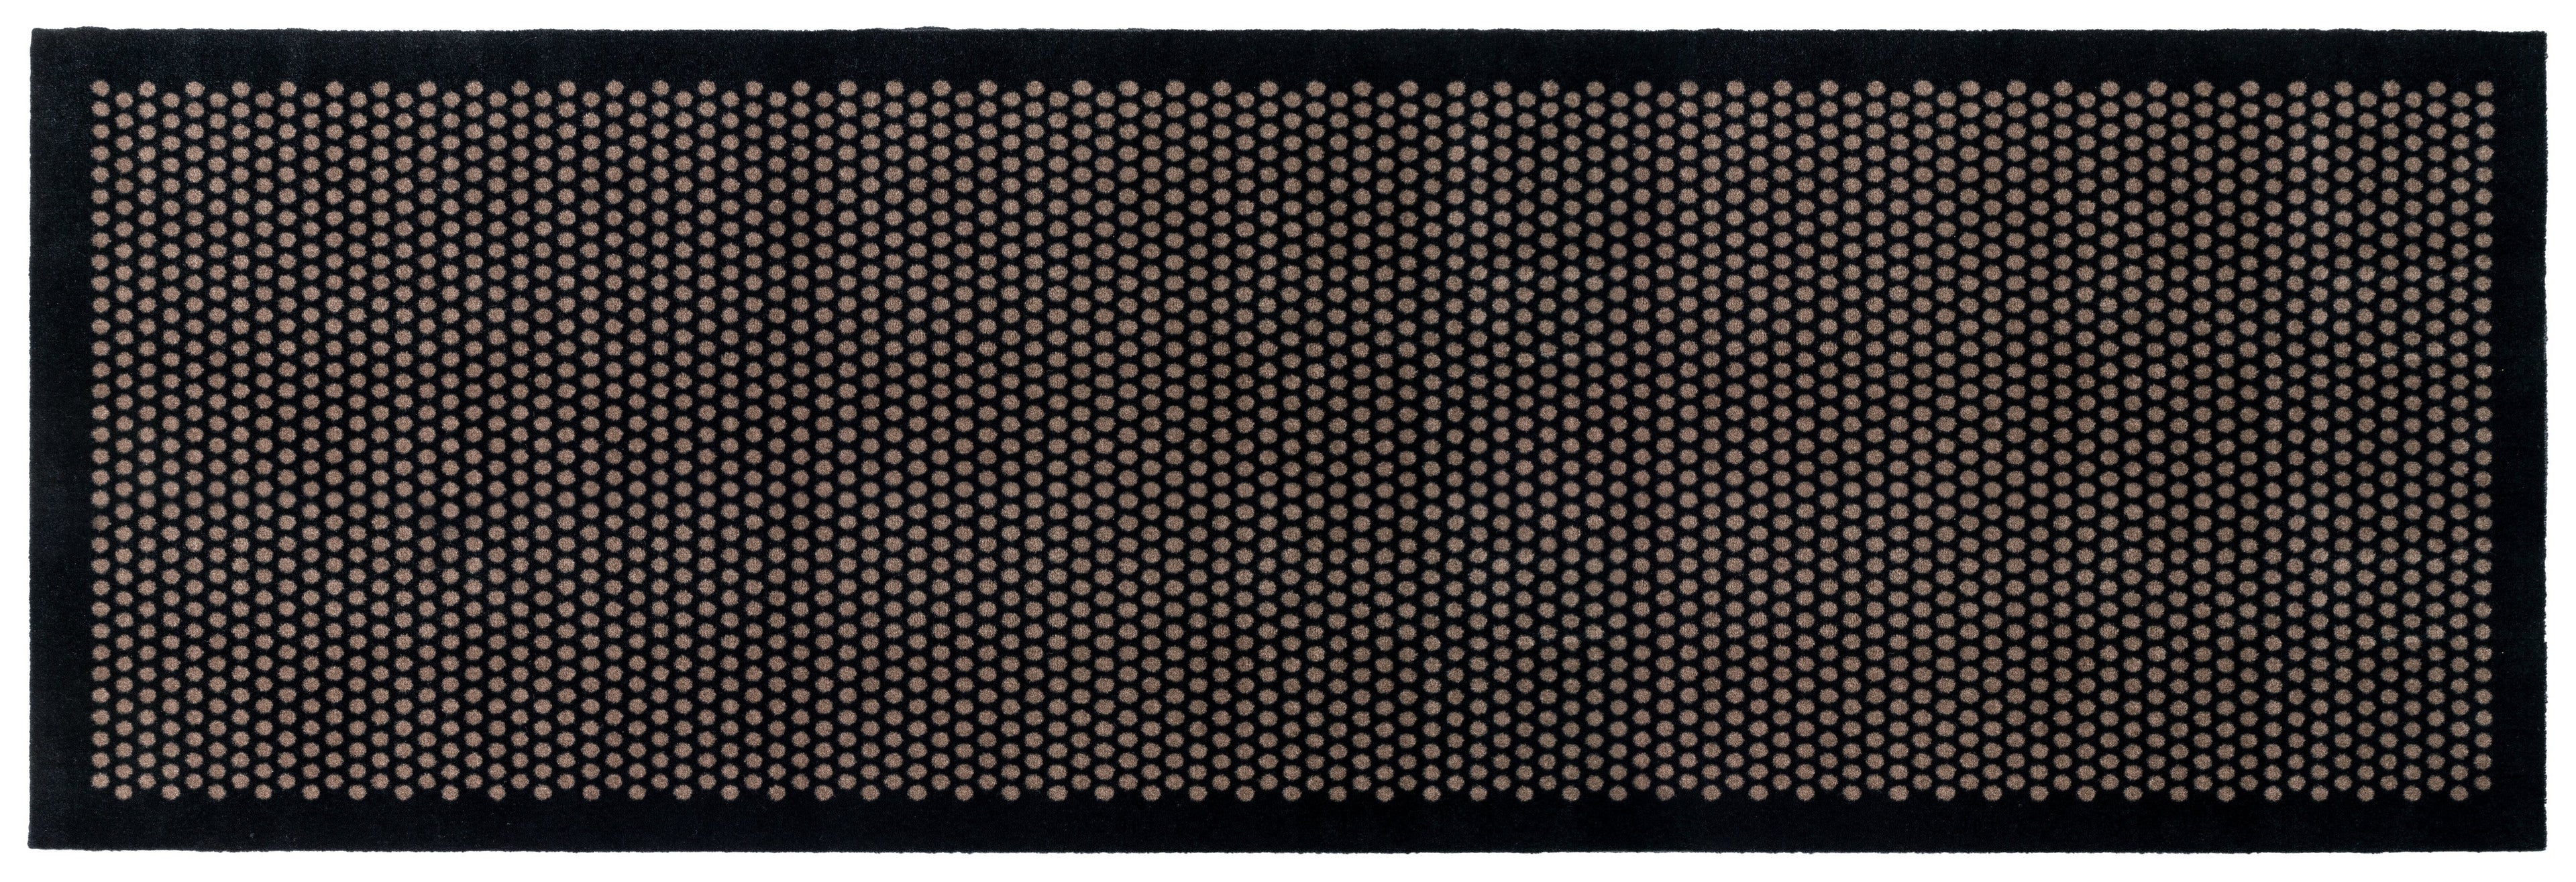 Bodenmatte 100 x 300 cm - Punkt/schwarzer Sand